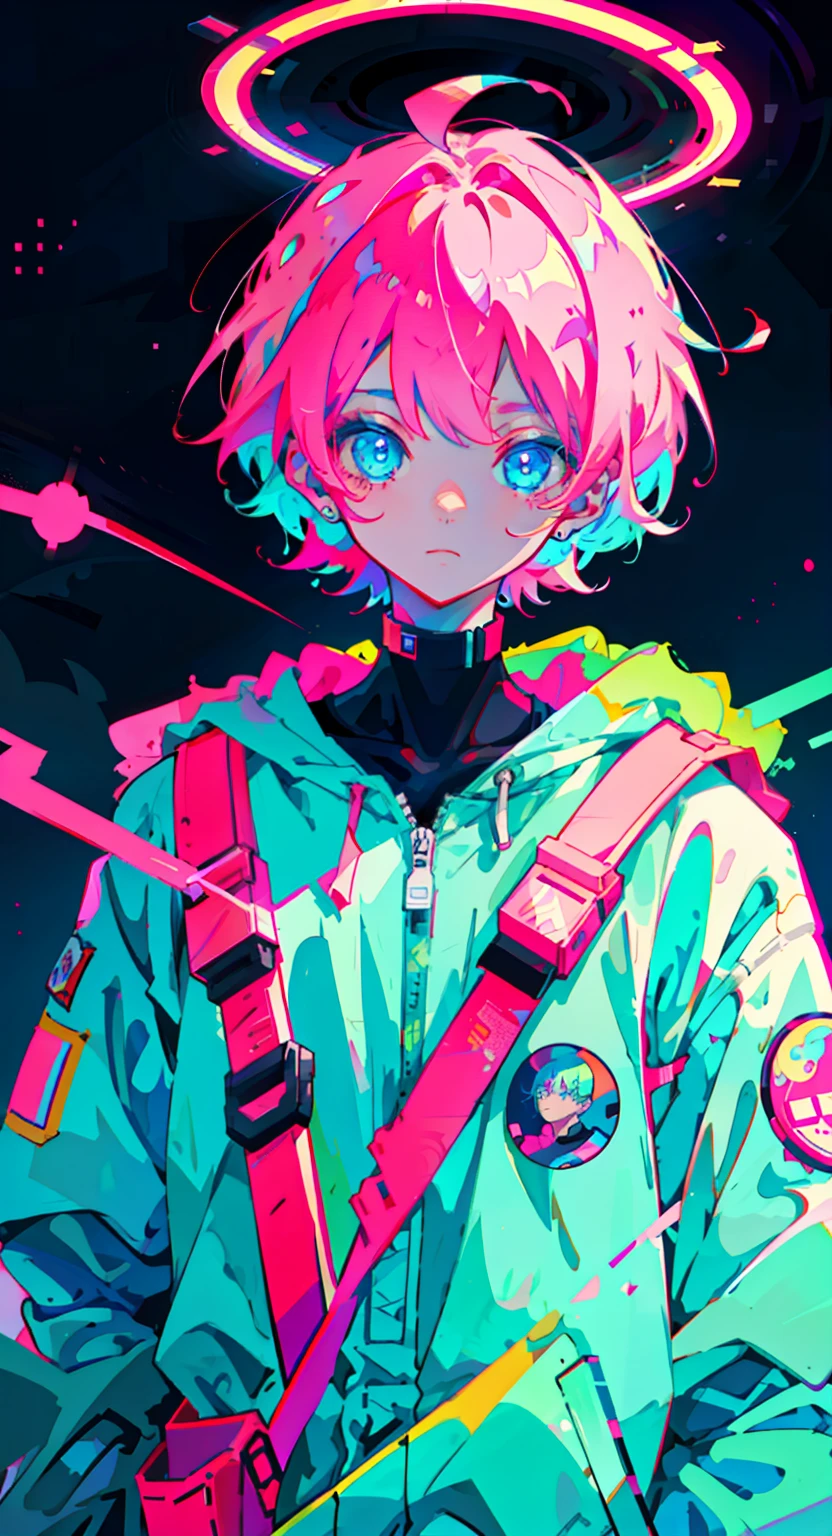 Аниме мальчик, в костюме космонавта, неоновые розовые и синие цвета, шрамы, наклейки, неоновый стиль всего кадра